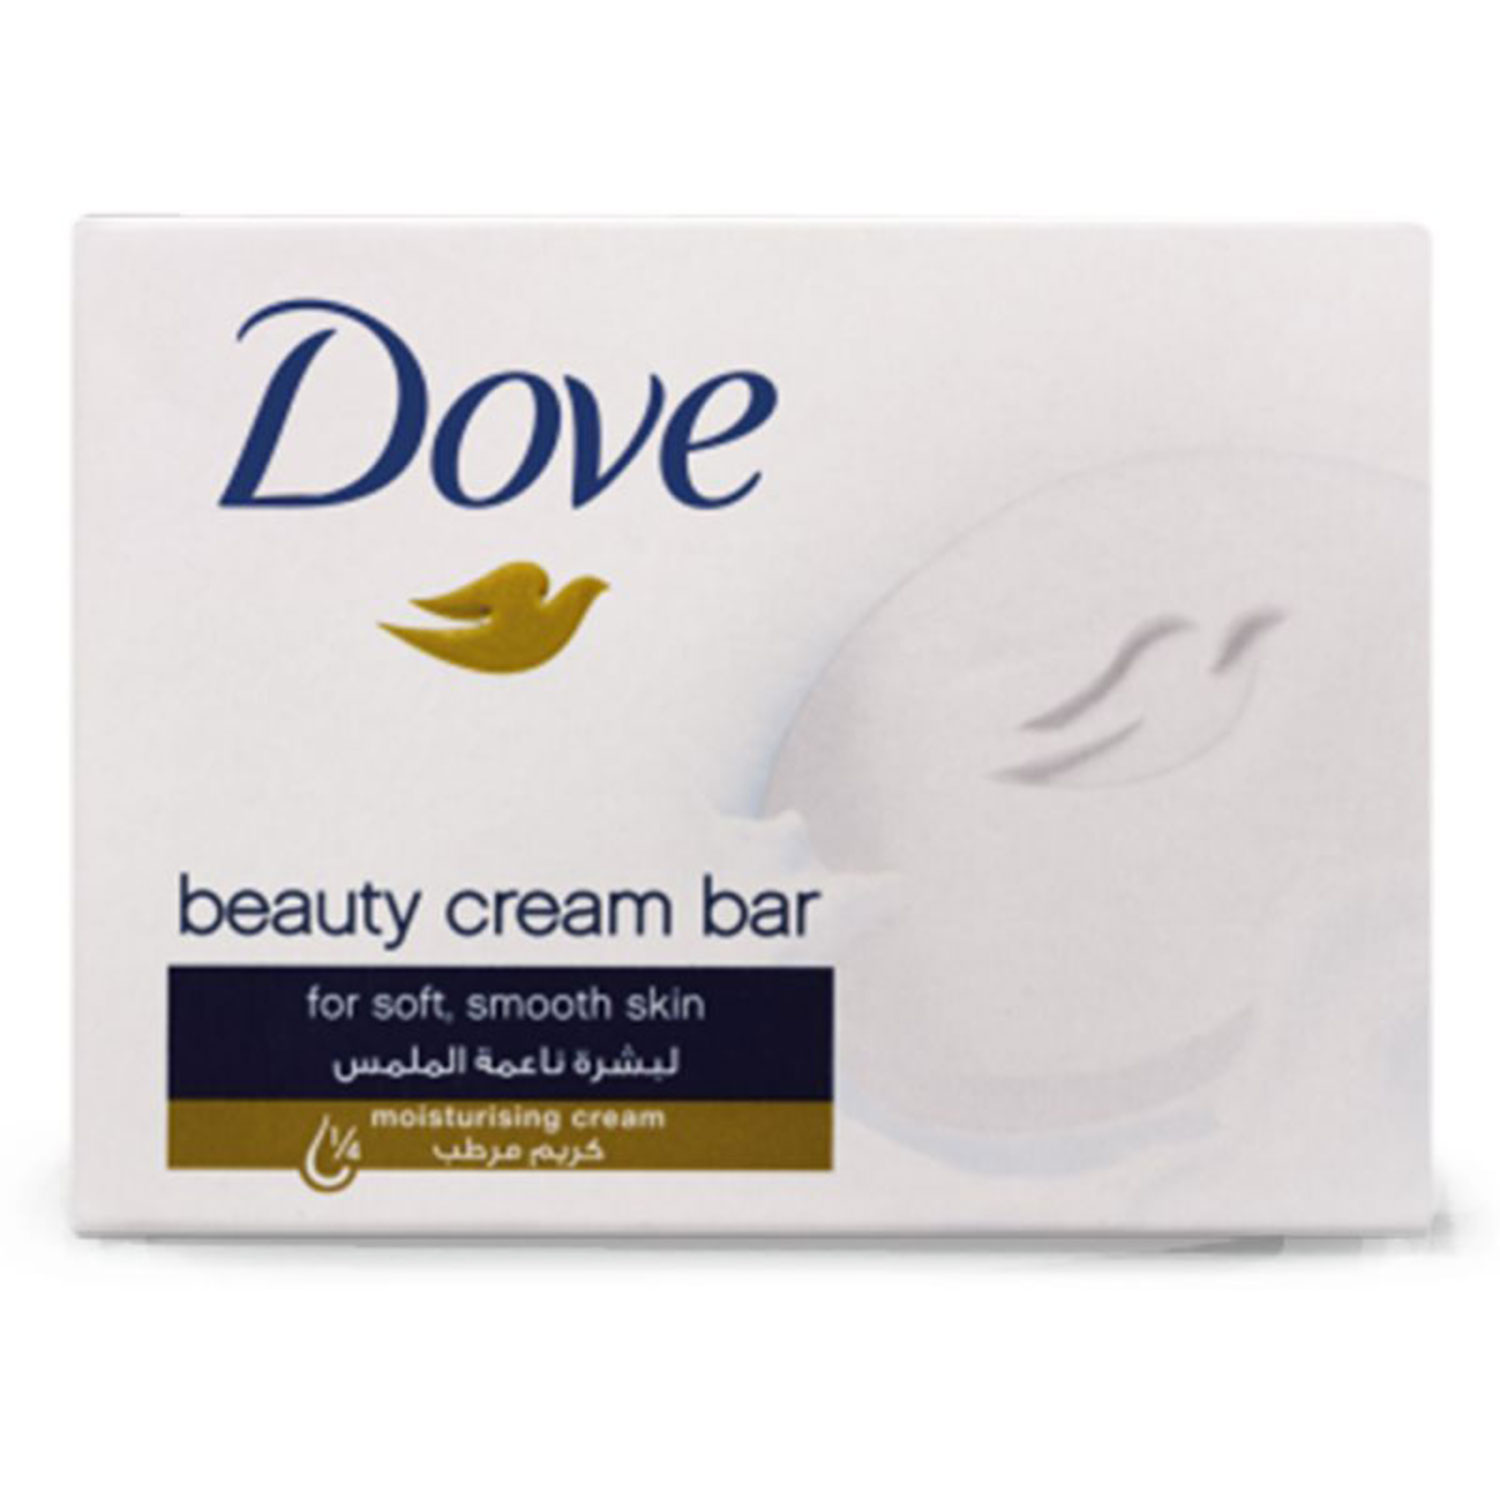 صابون بیوتی داو (Dove) حاوی 25% کرم مرطوب کننده 